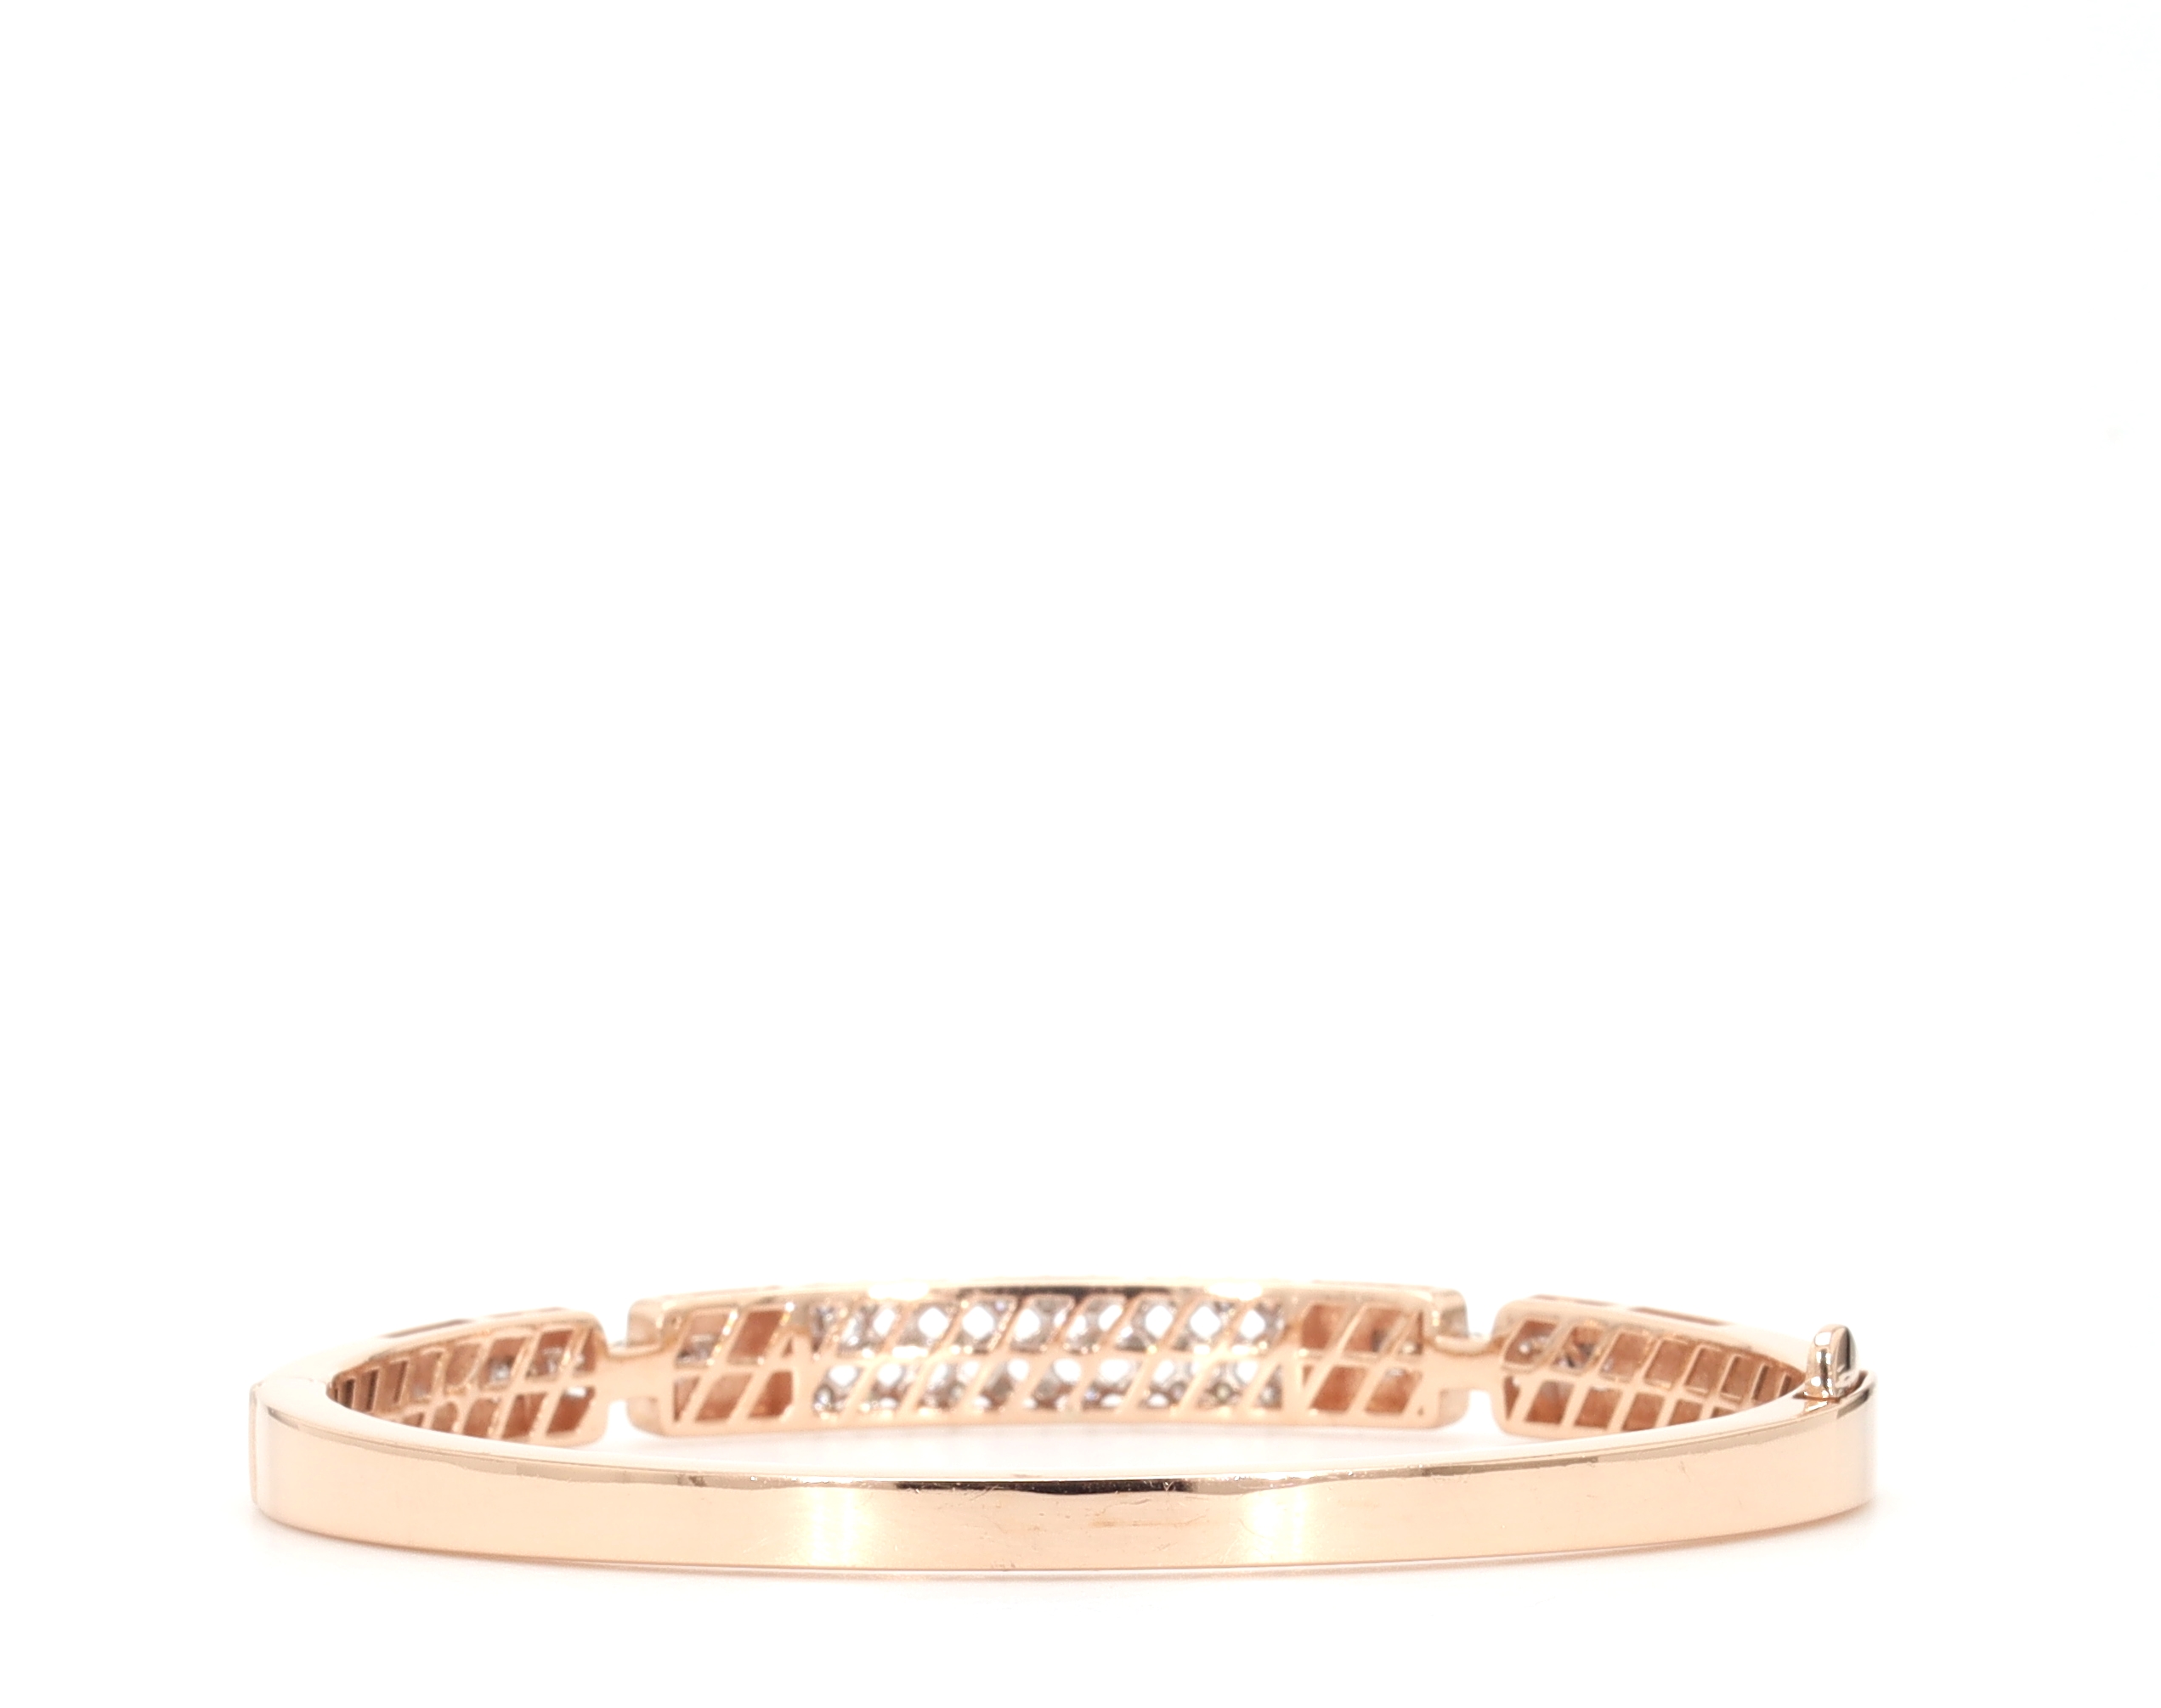 Buy Modern Glitter Bracelet Daily Wear Kappu Design for Girls